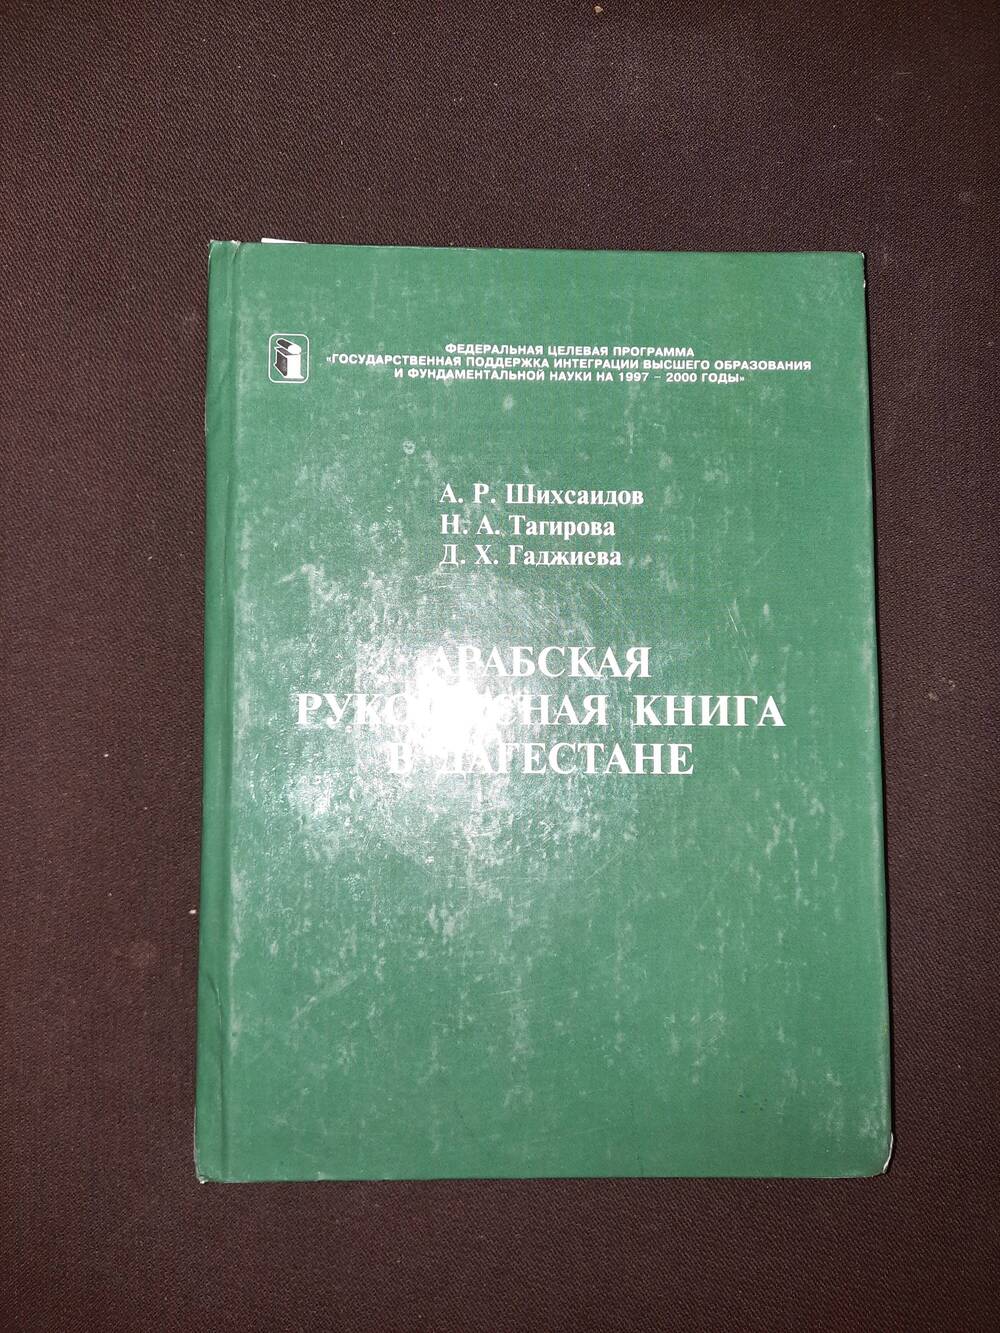 Книга. А.Р. Шехсаидов, Н.А.Тагирова. Арабская рукописная книга в Дагестане.